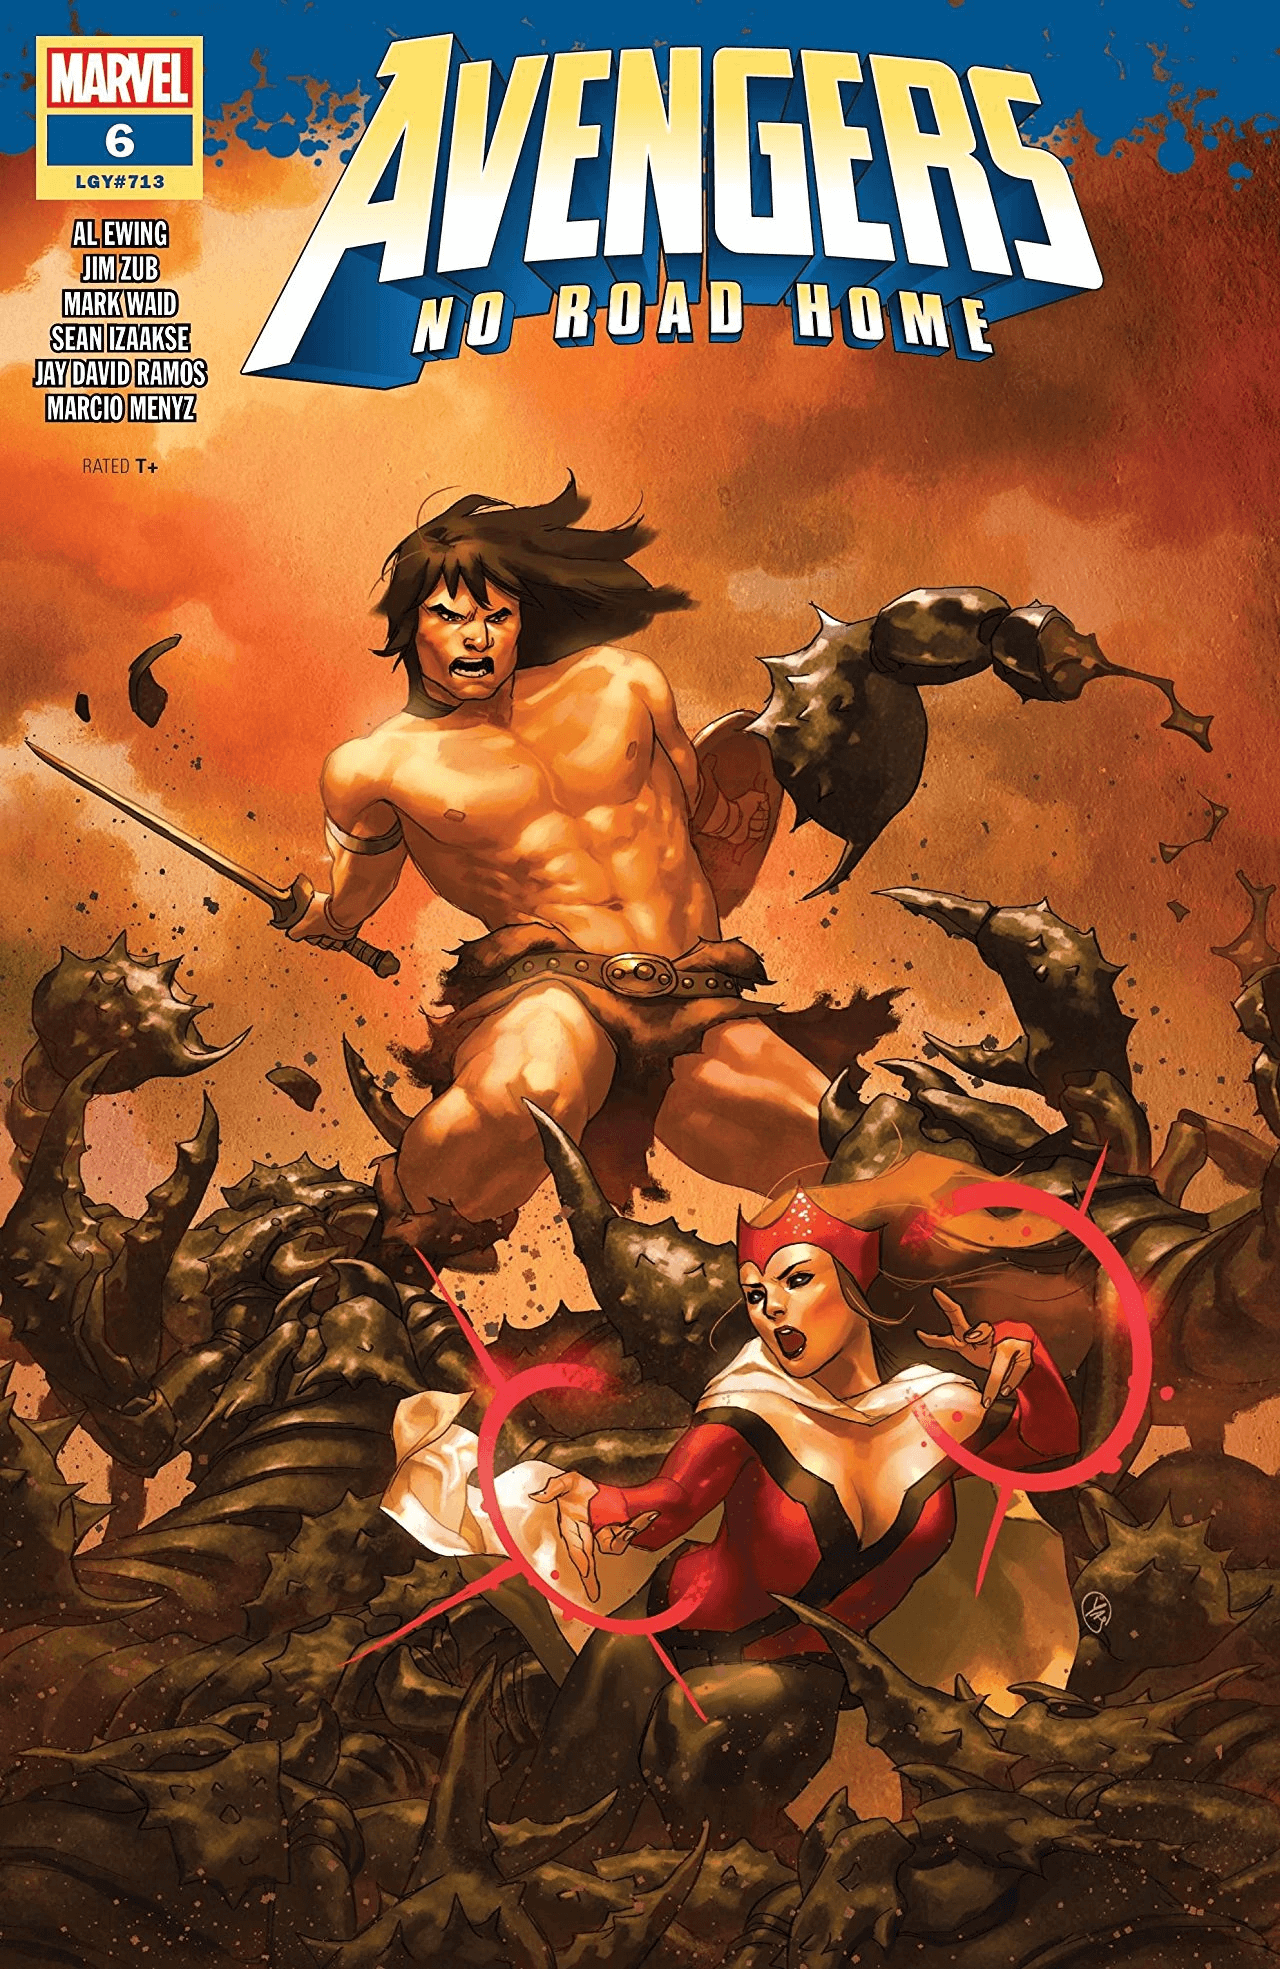 Cover di Avengers: No Road Home 6, che ha segnato il ritorno di Conan alla Marvel